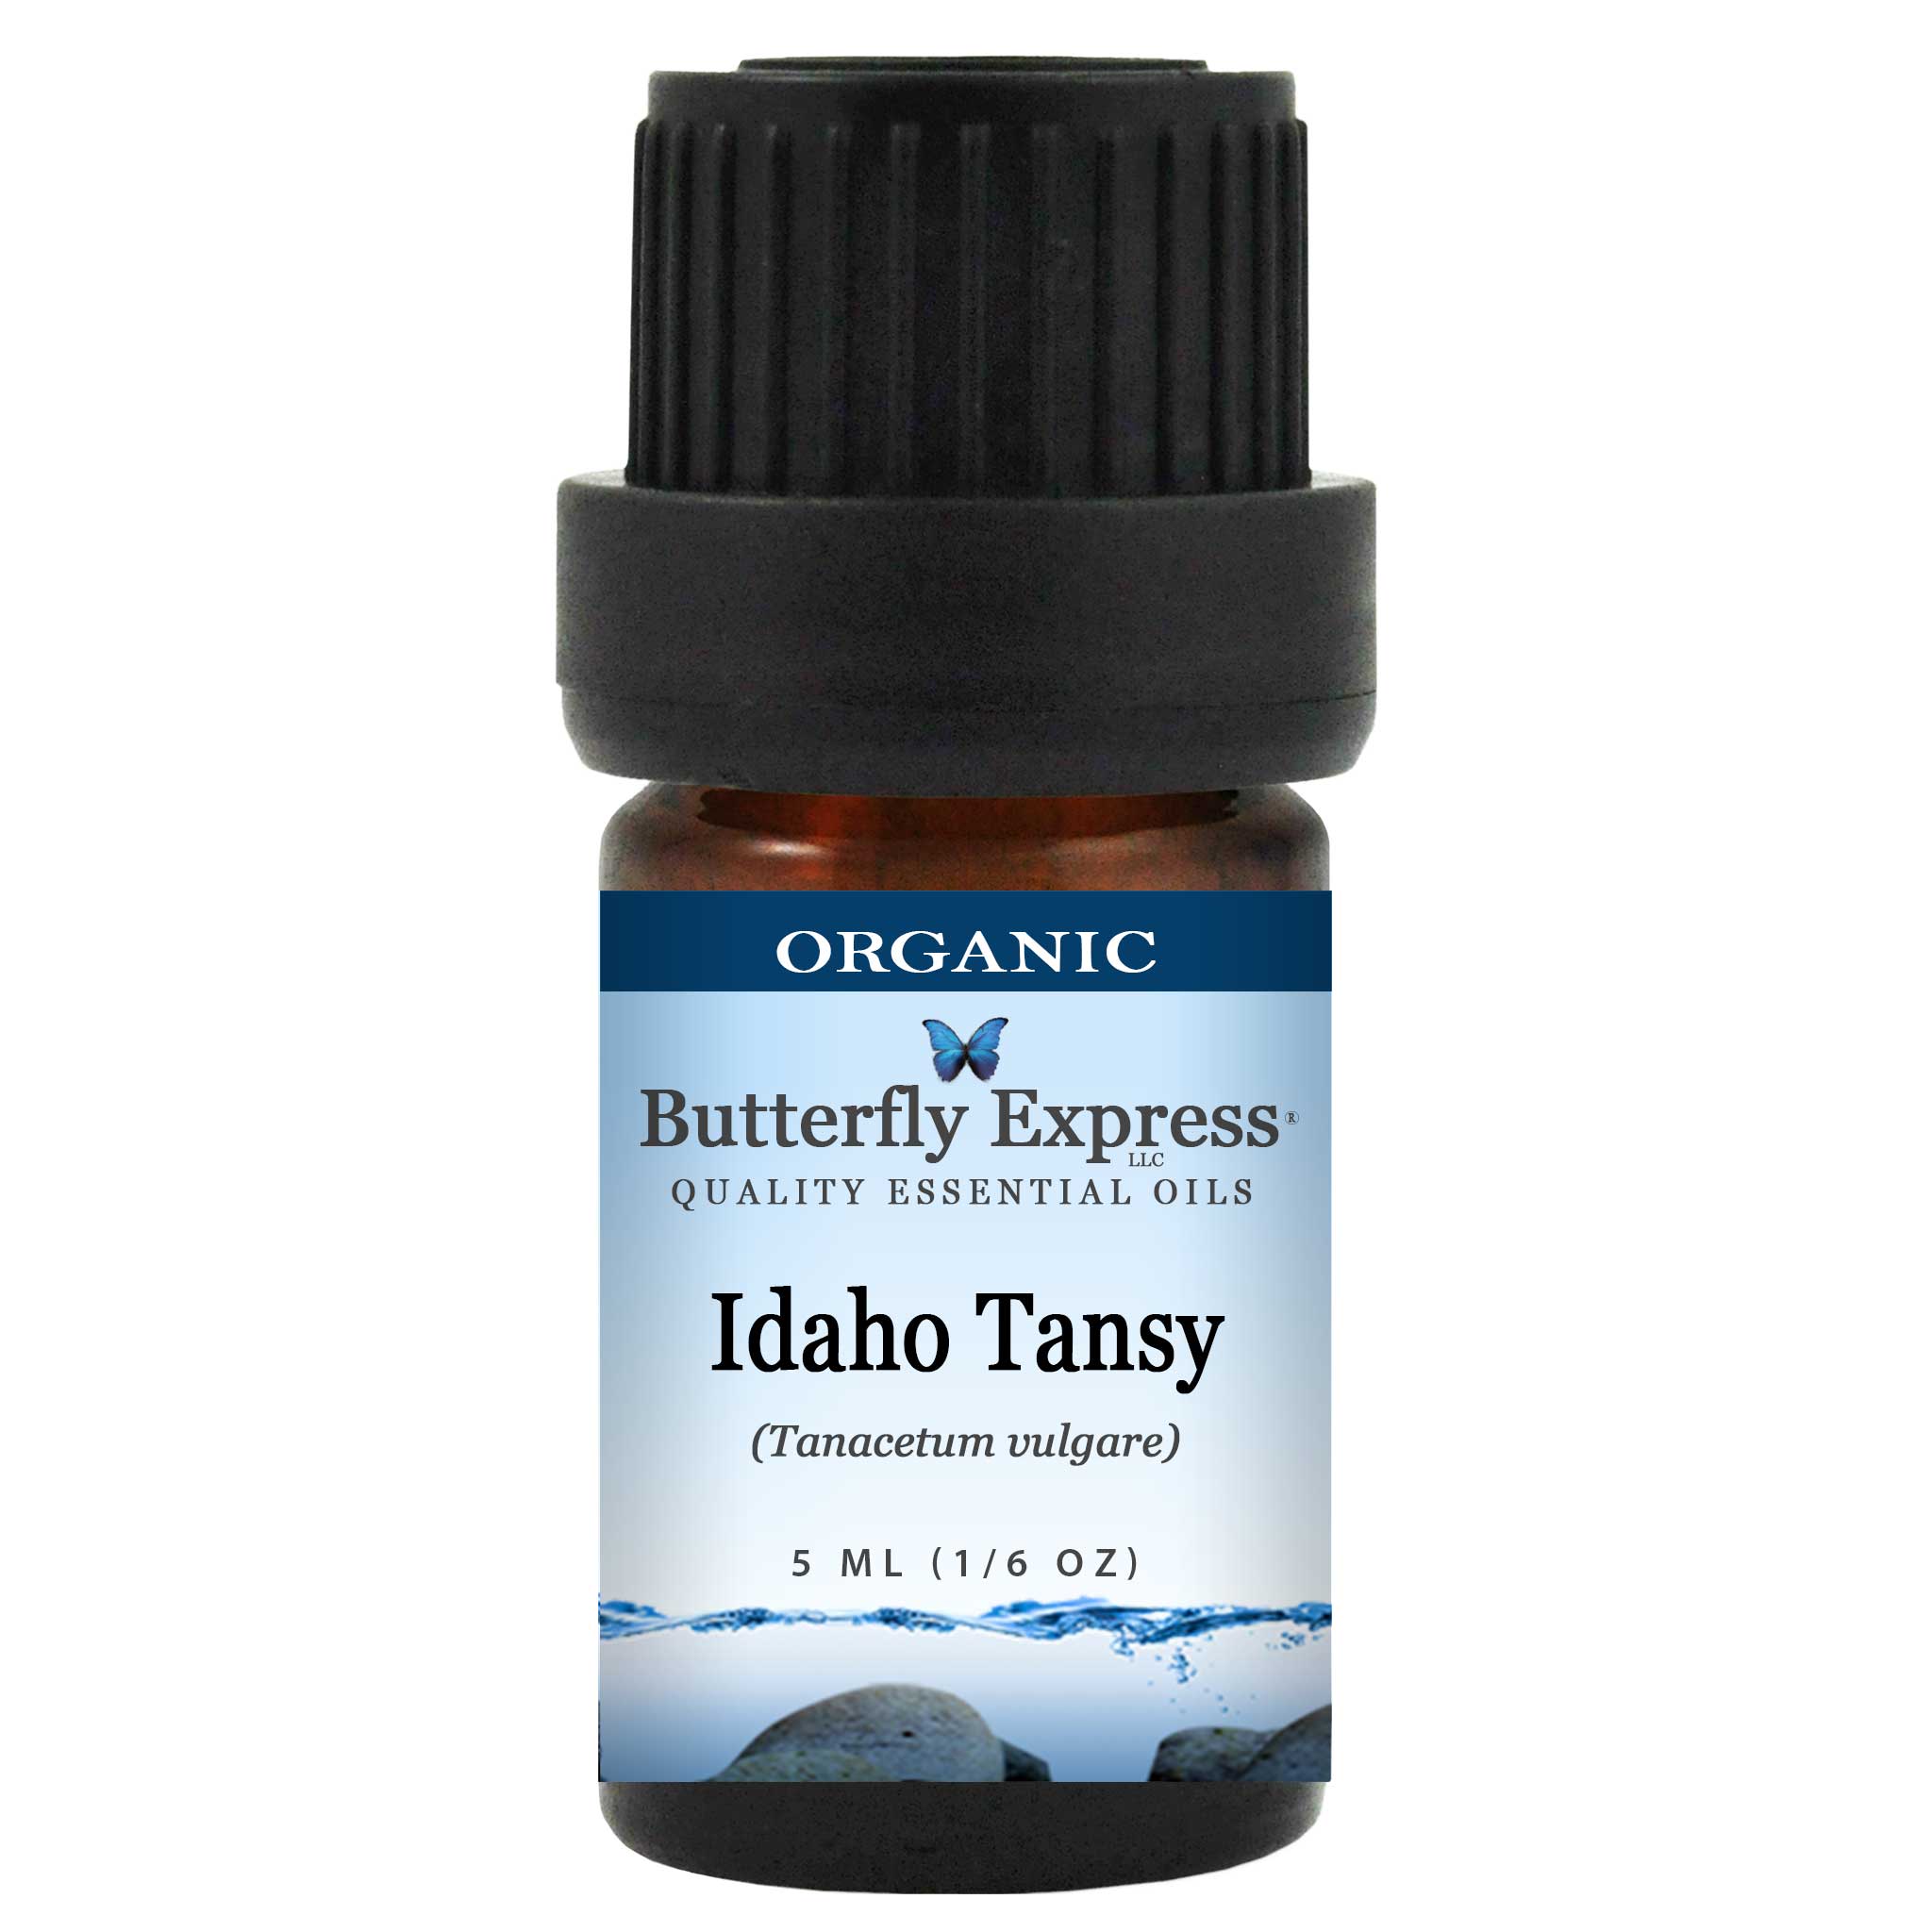 Idaho Tansy Organic Essential Oil